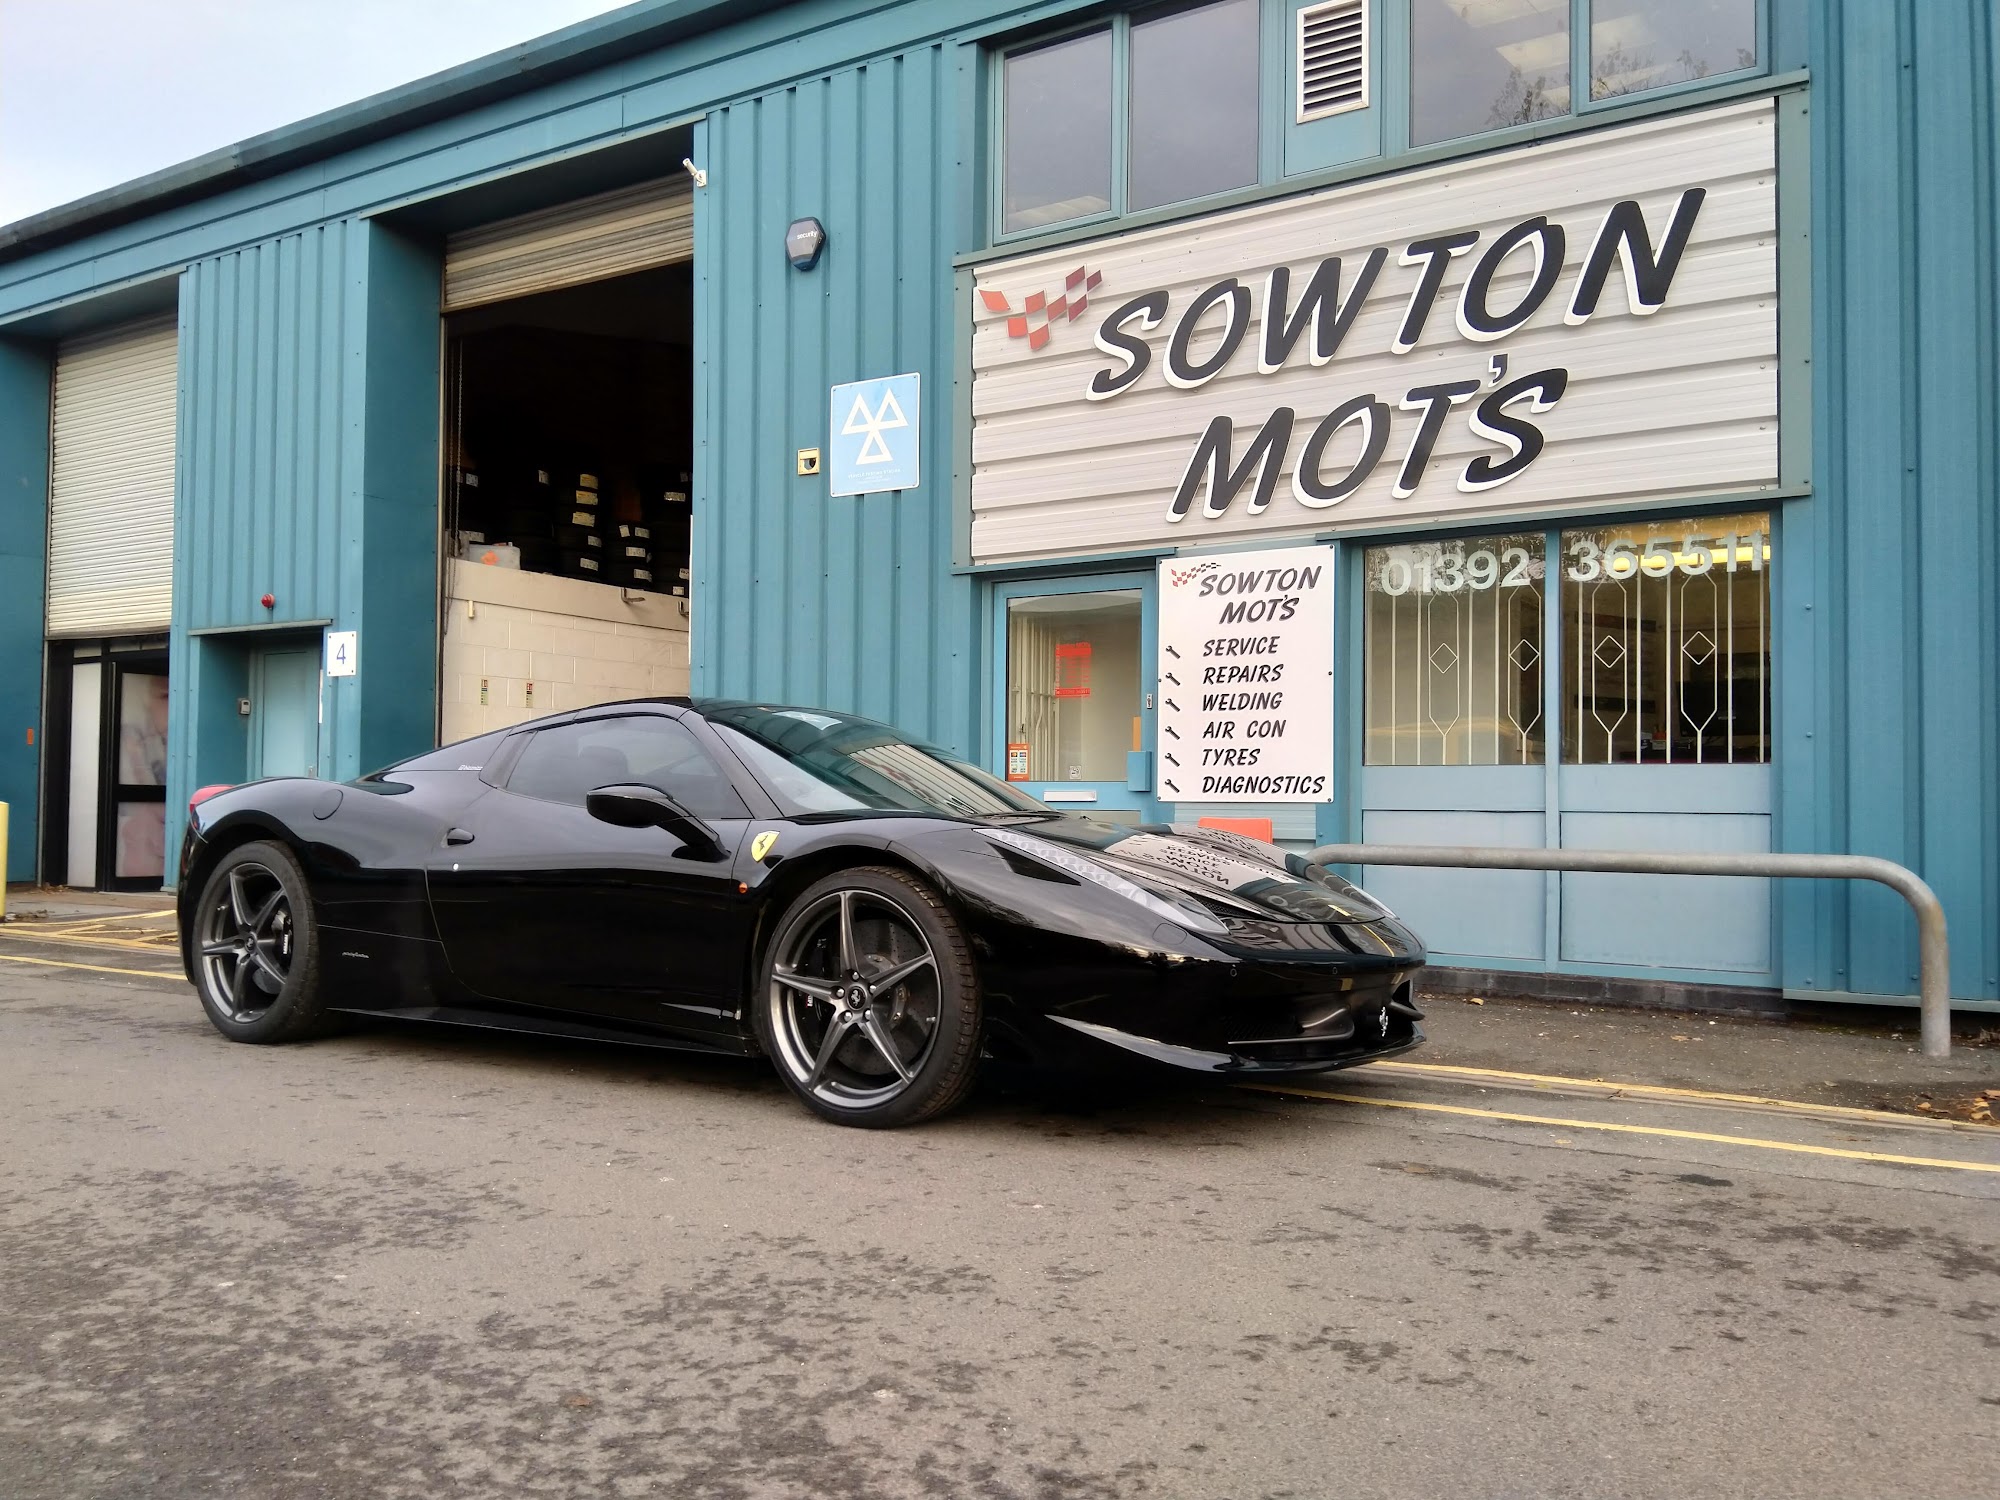 Sowton Mot's Ltd